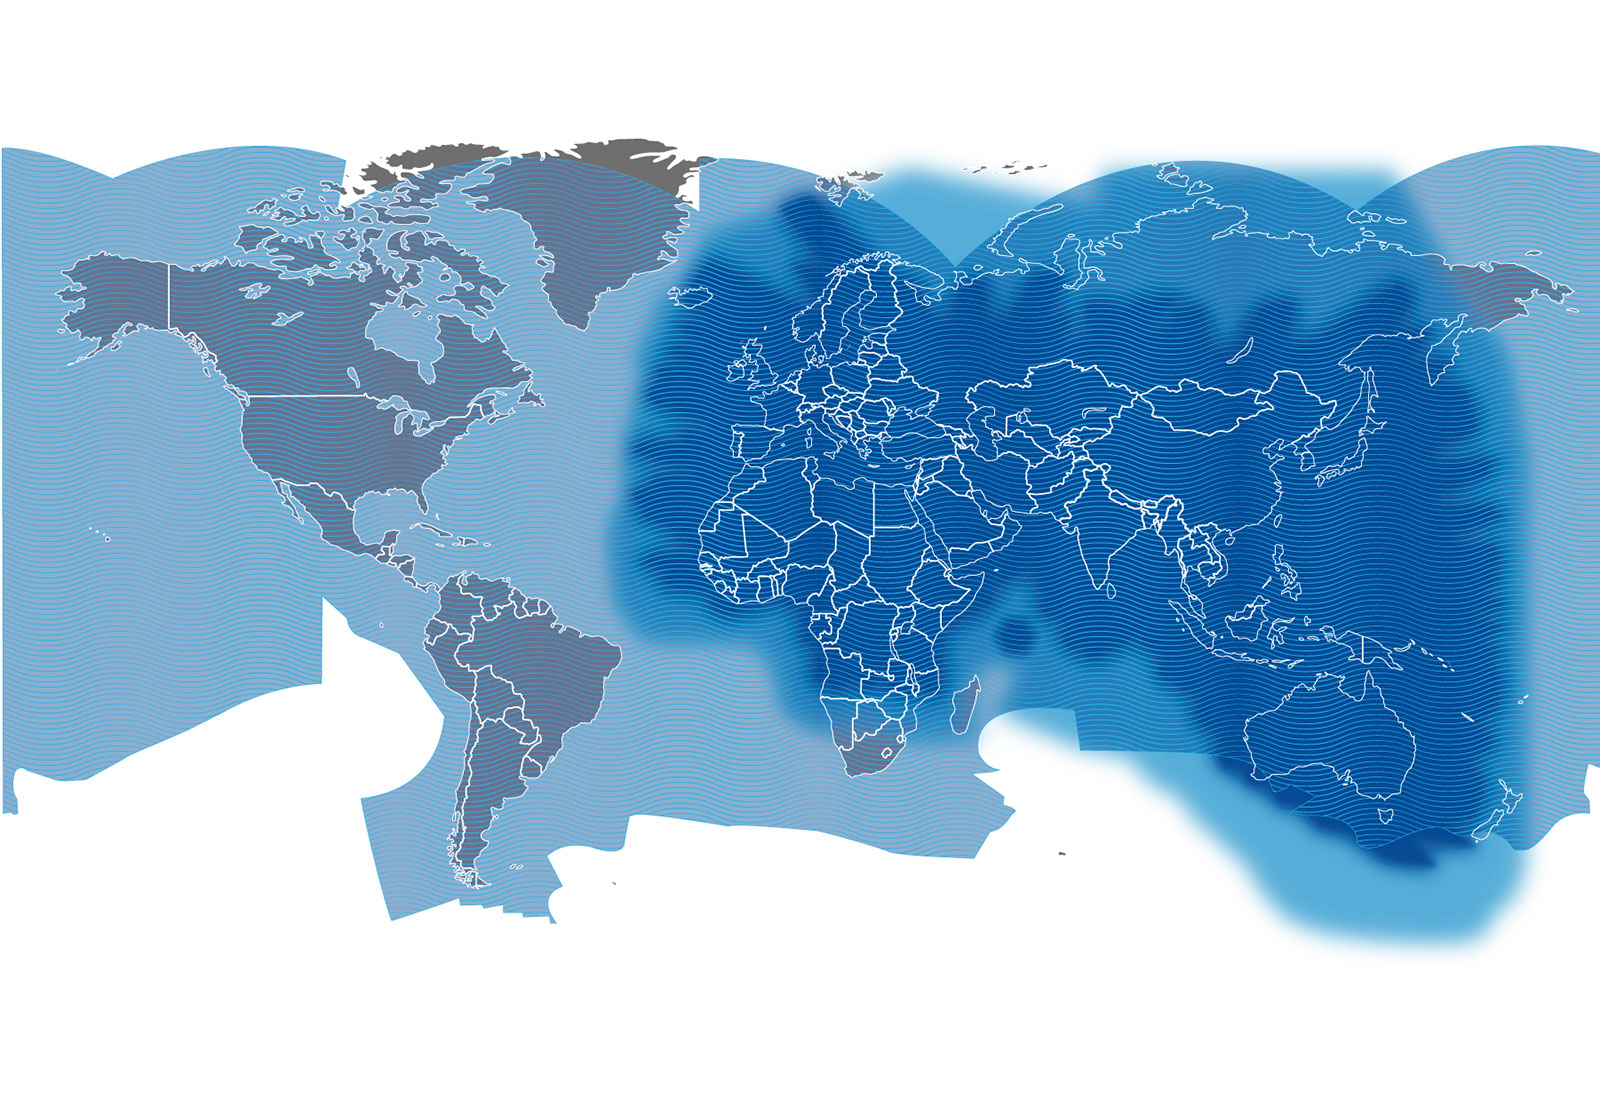 BGAN world coverage map